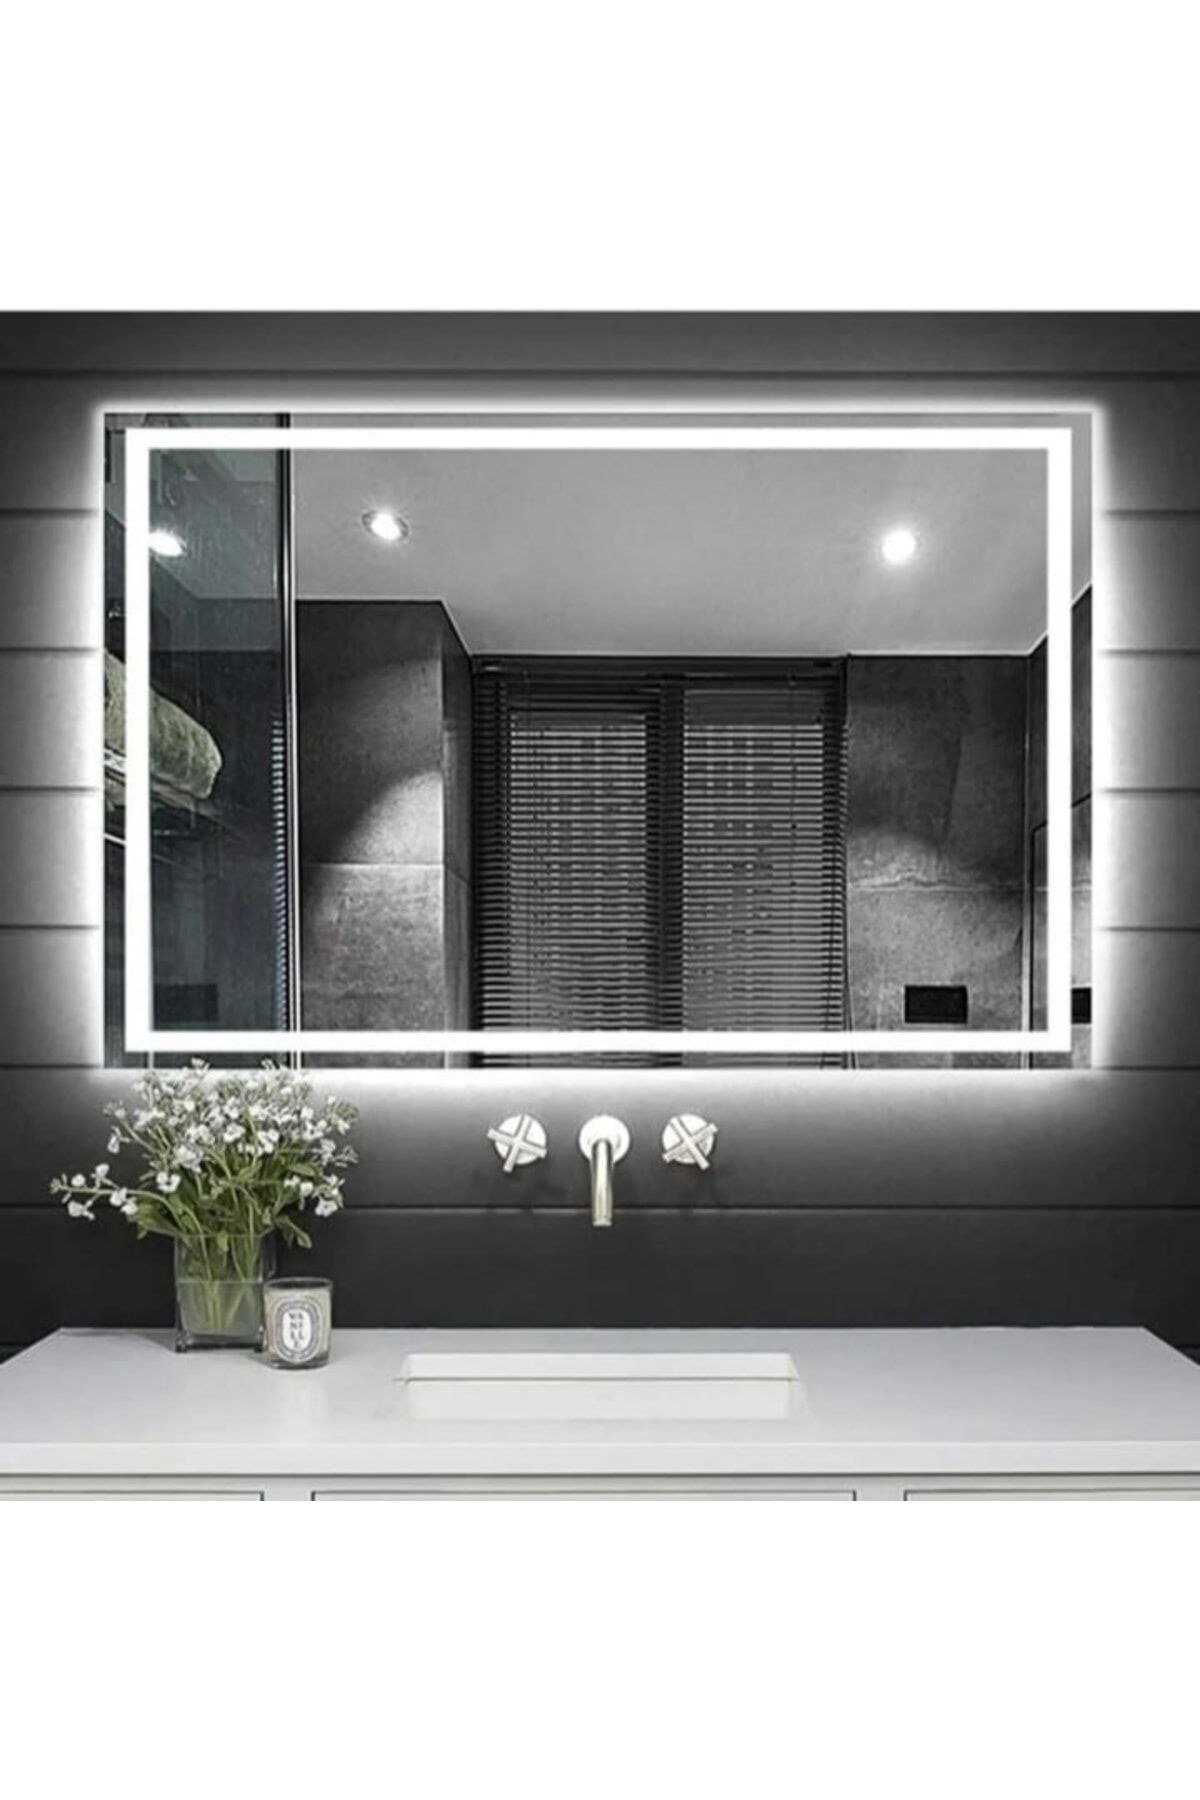 Toprak dekor Ölçüde Ledli Banyo Makyaj Aynası 70*60